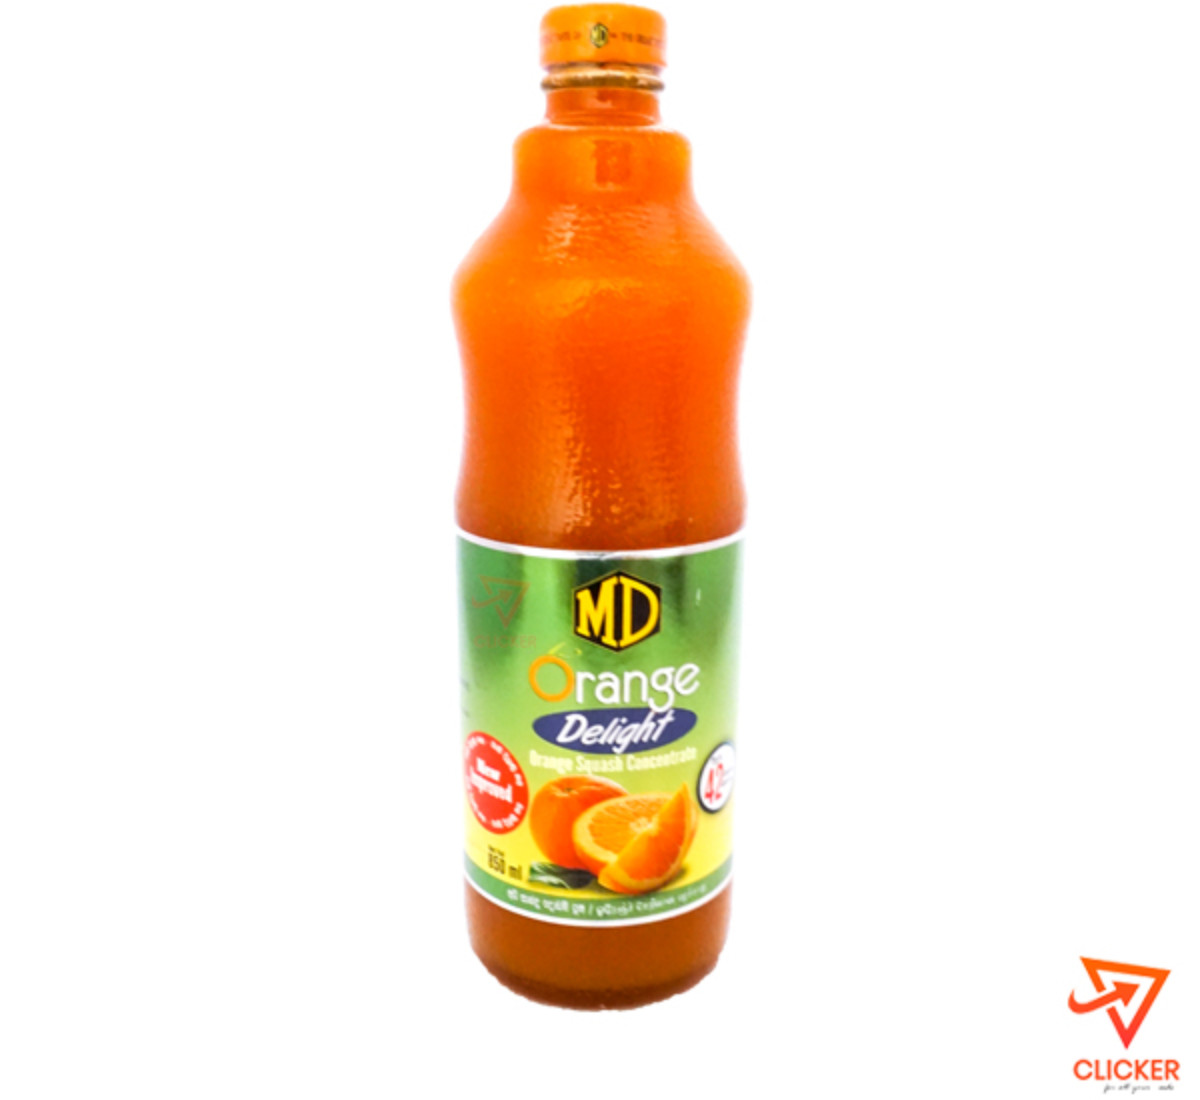 Clicker product 700ml MD orange delight 1150